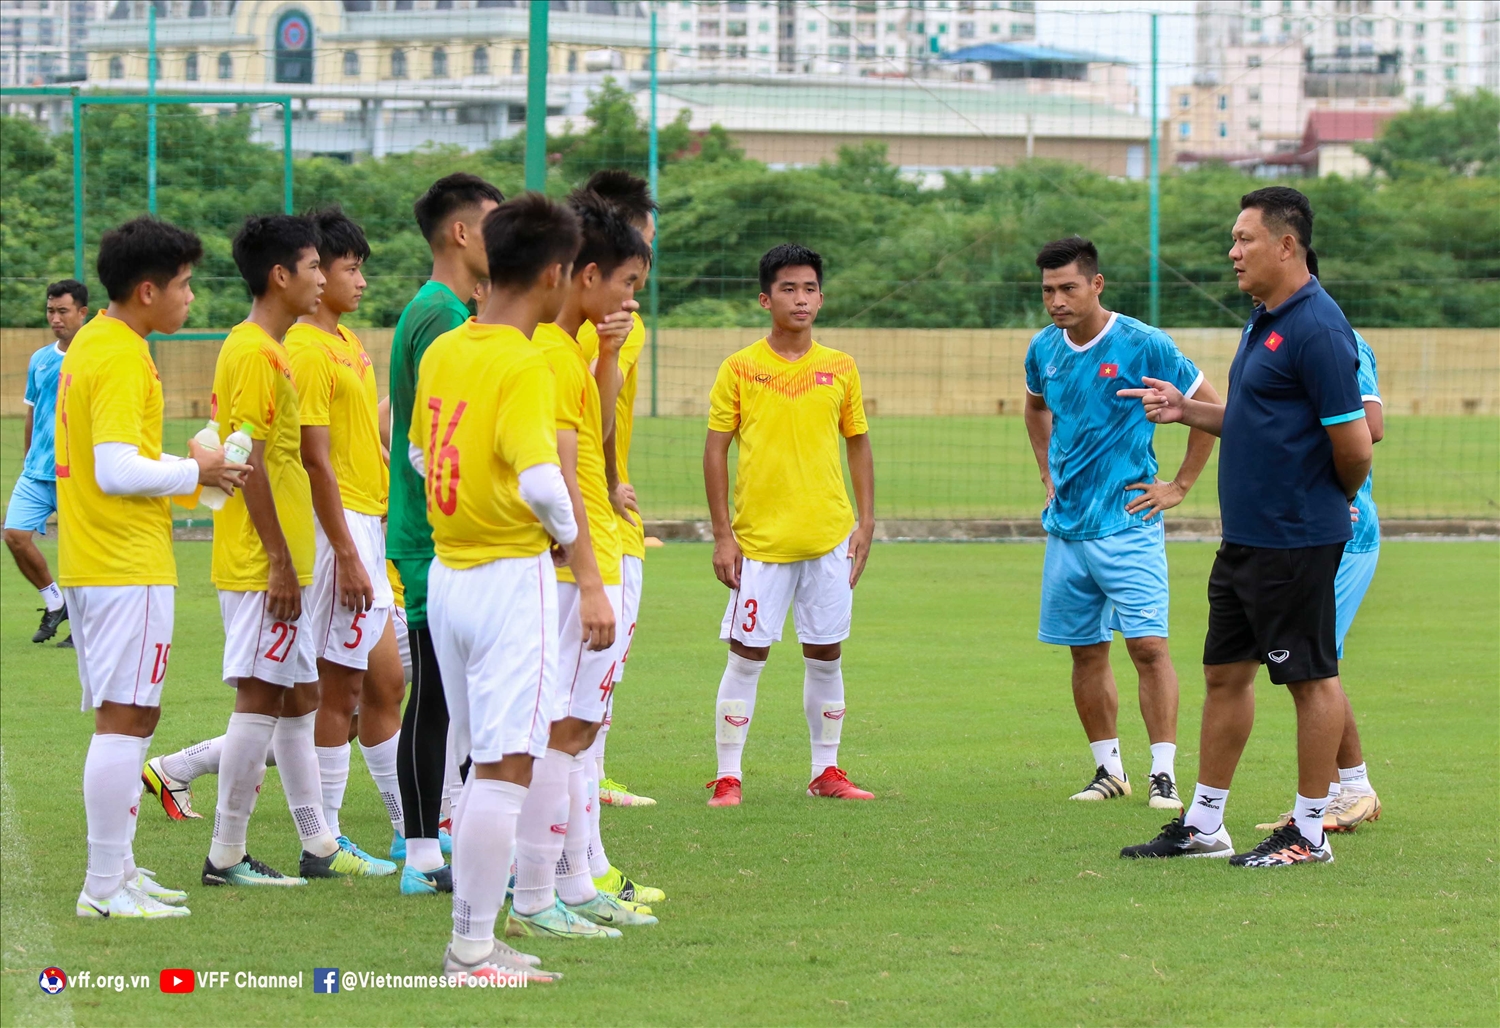 HLV Nguyễn Quốc Tuấn (áo xanh đậm) đặt mục tiêu cho U16 Việt Nam ít nhất vào tới bán kết Giải U16 Đông Nam Á 2022 - Ảnh: VFF